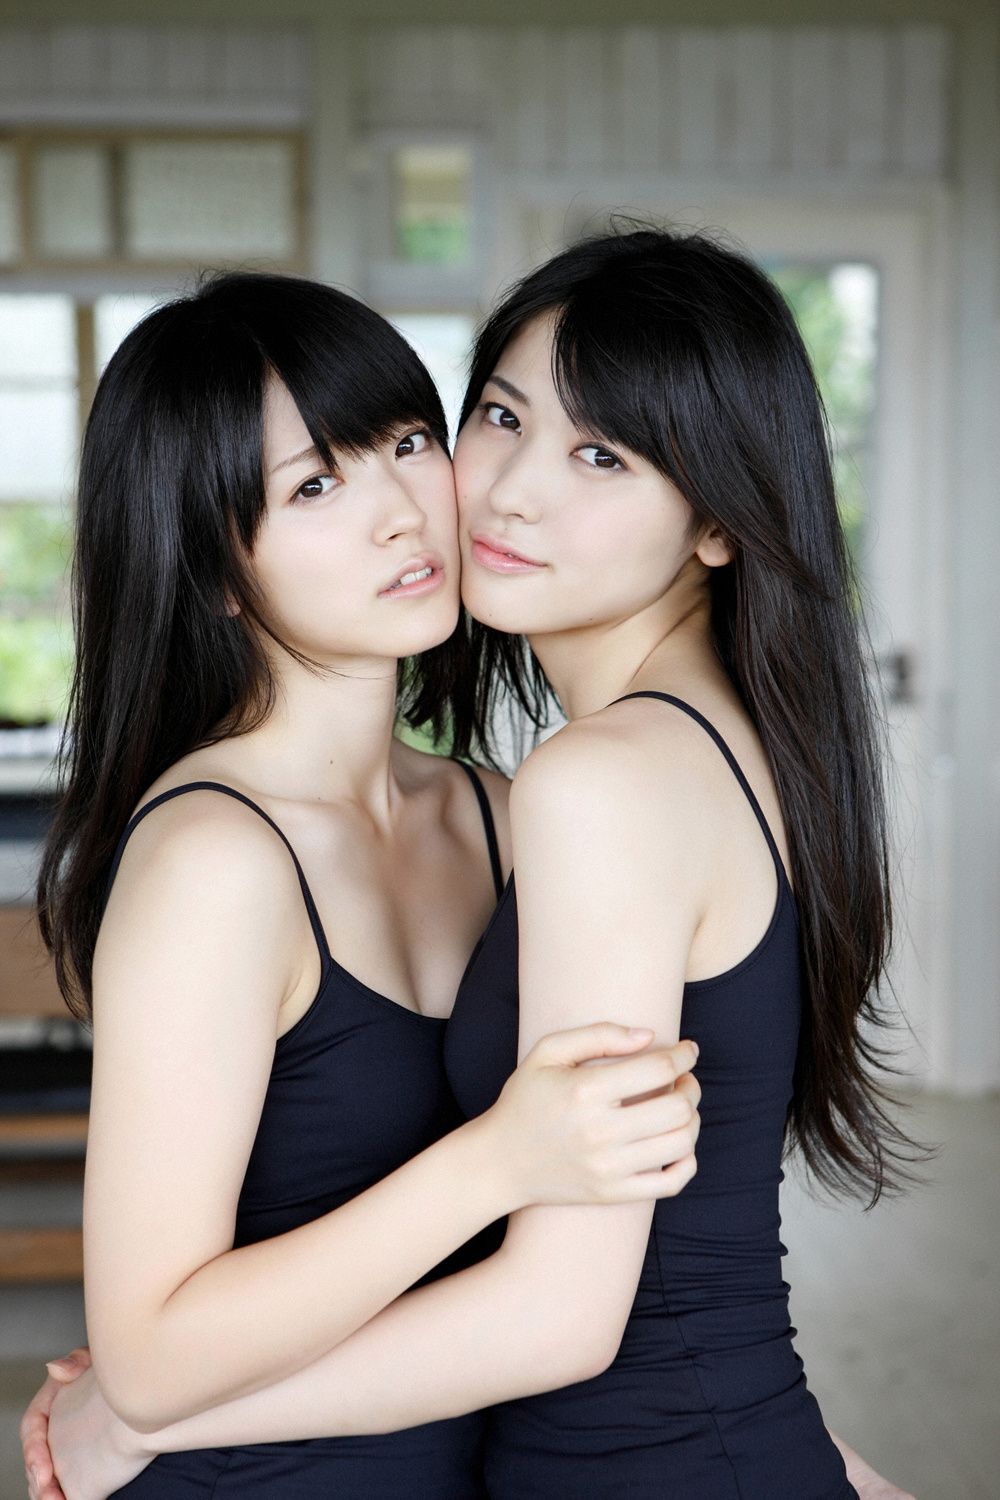 Cute Lesbians From Thailand